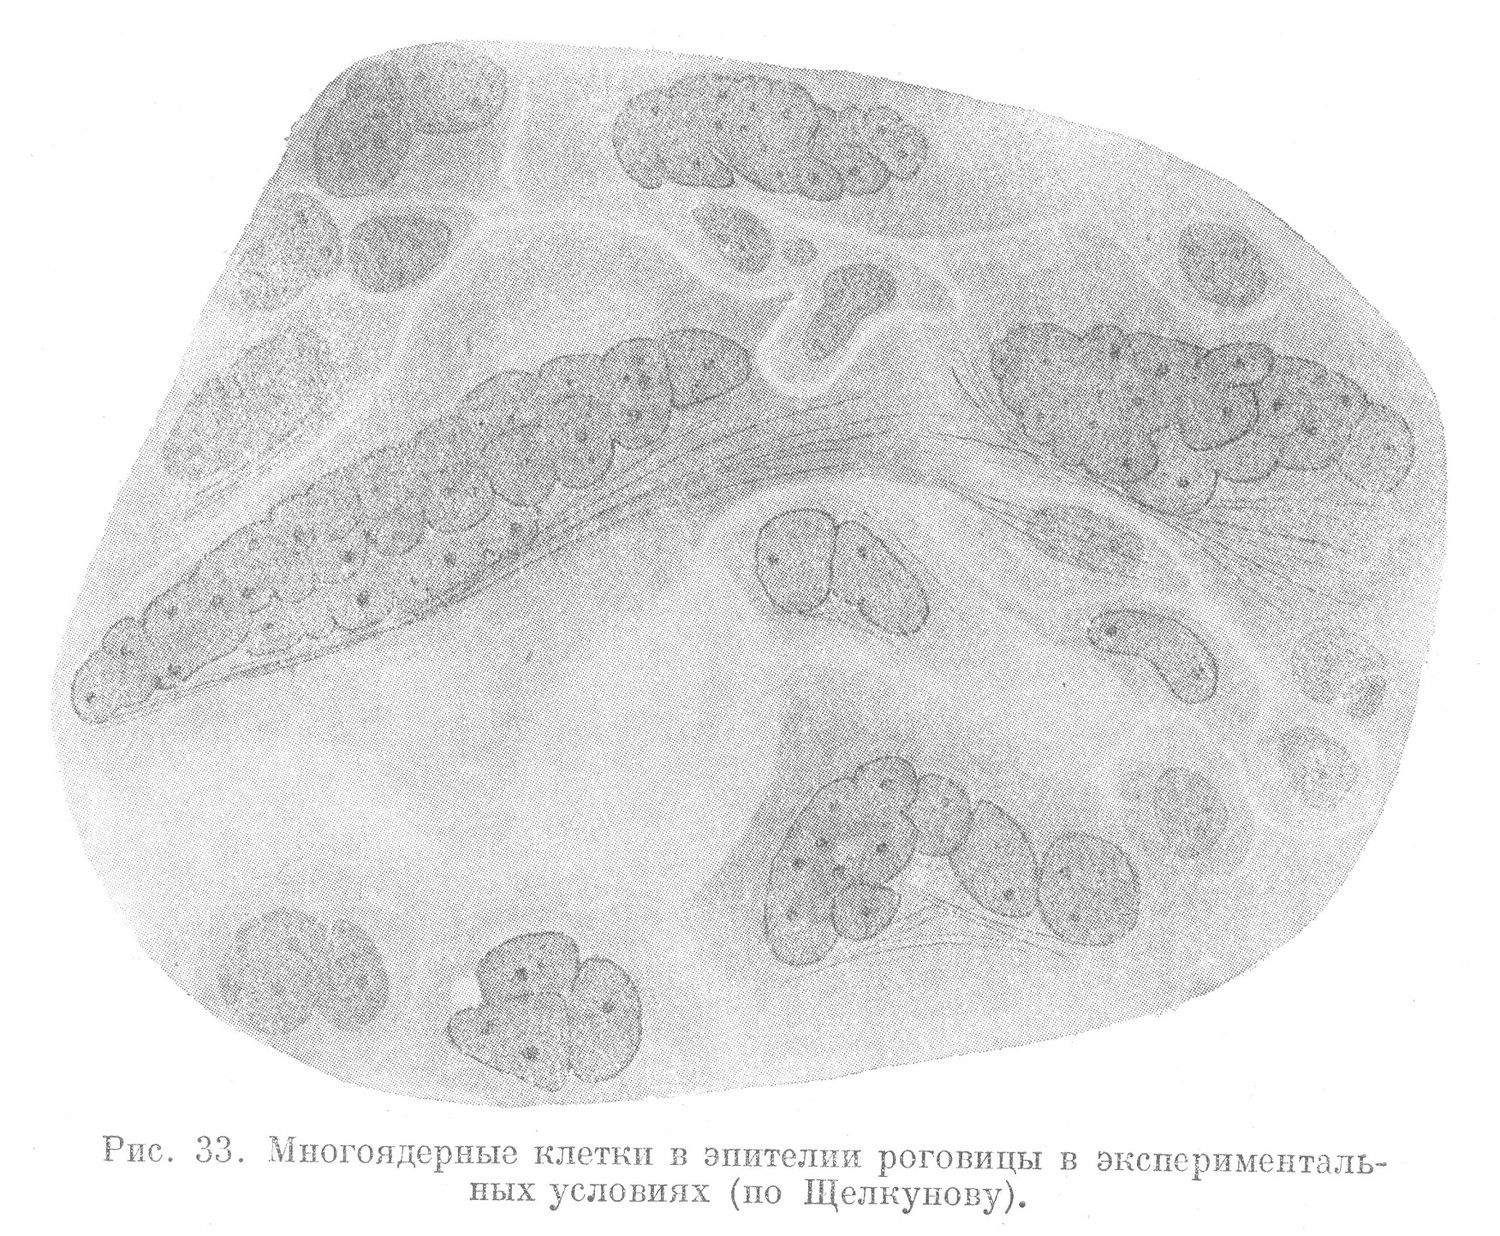 Многоядериые клетки в эпителии роговицы в экспериментальных условиях (по Щелкунову).